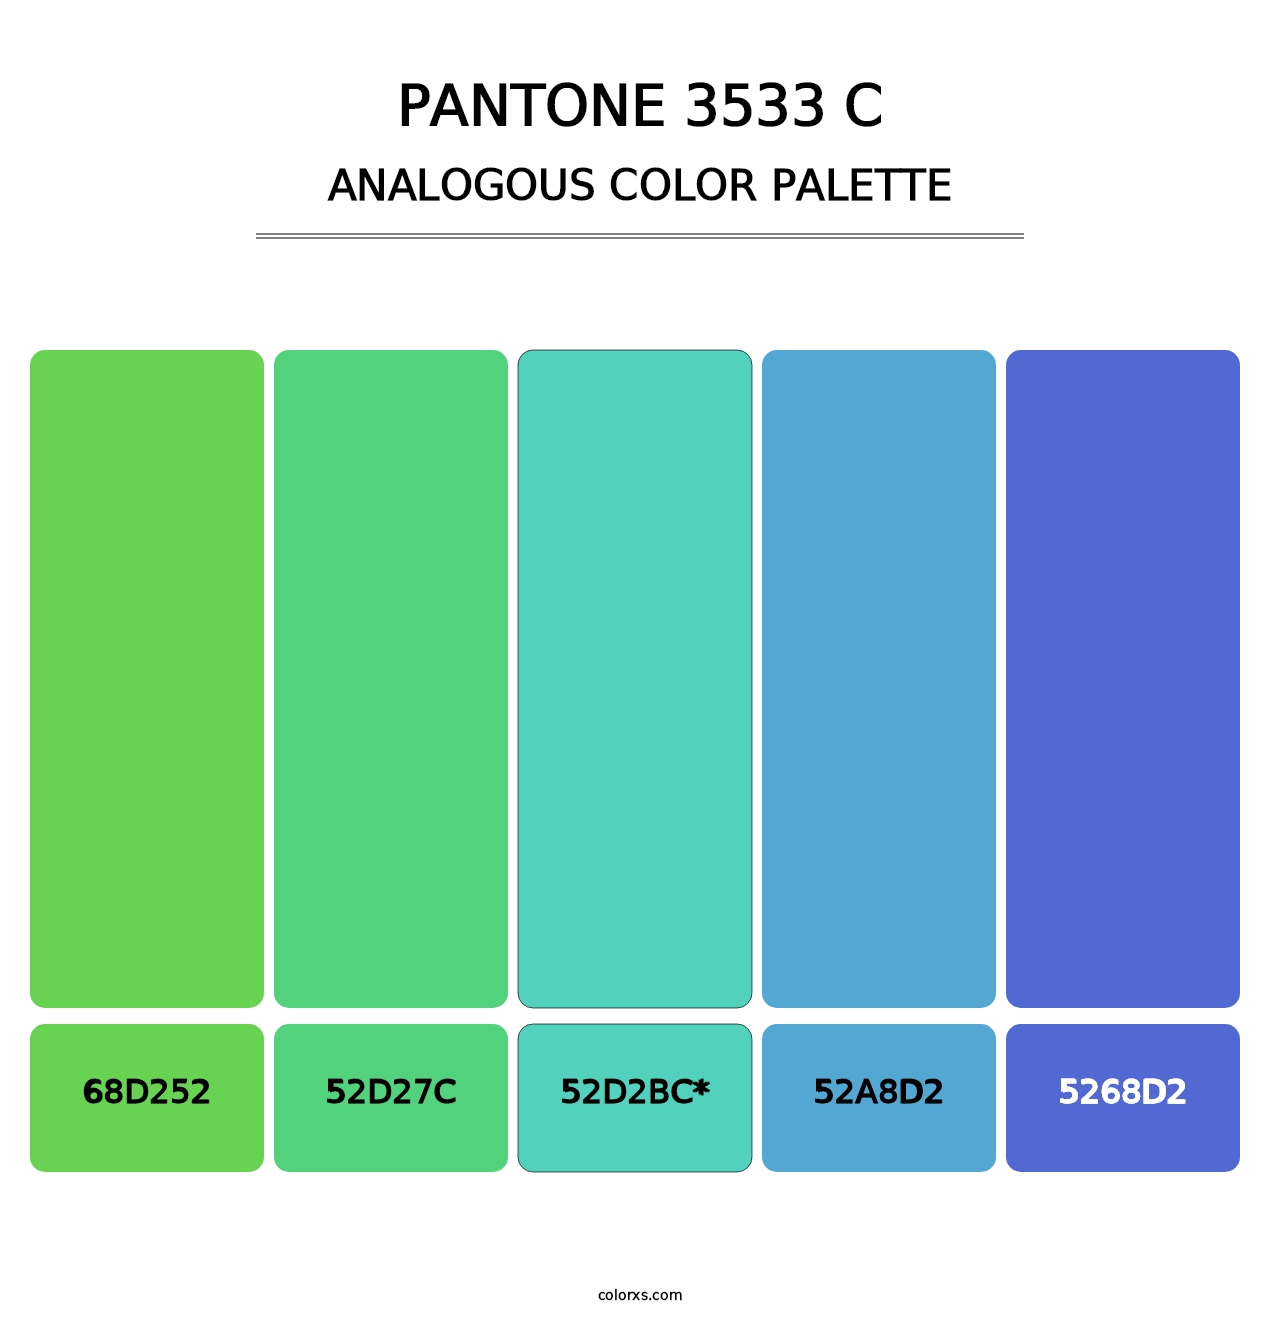 PANTONE 3533 C - Analogous Color Palette